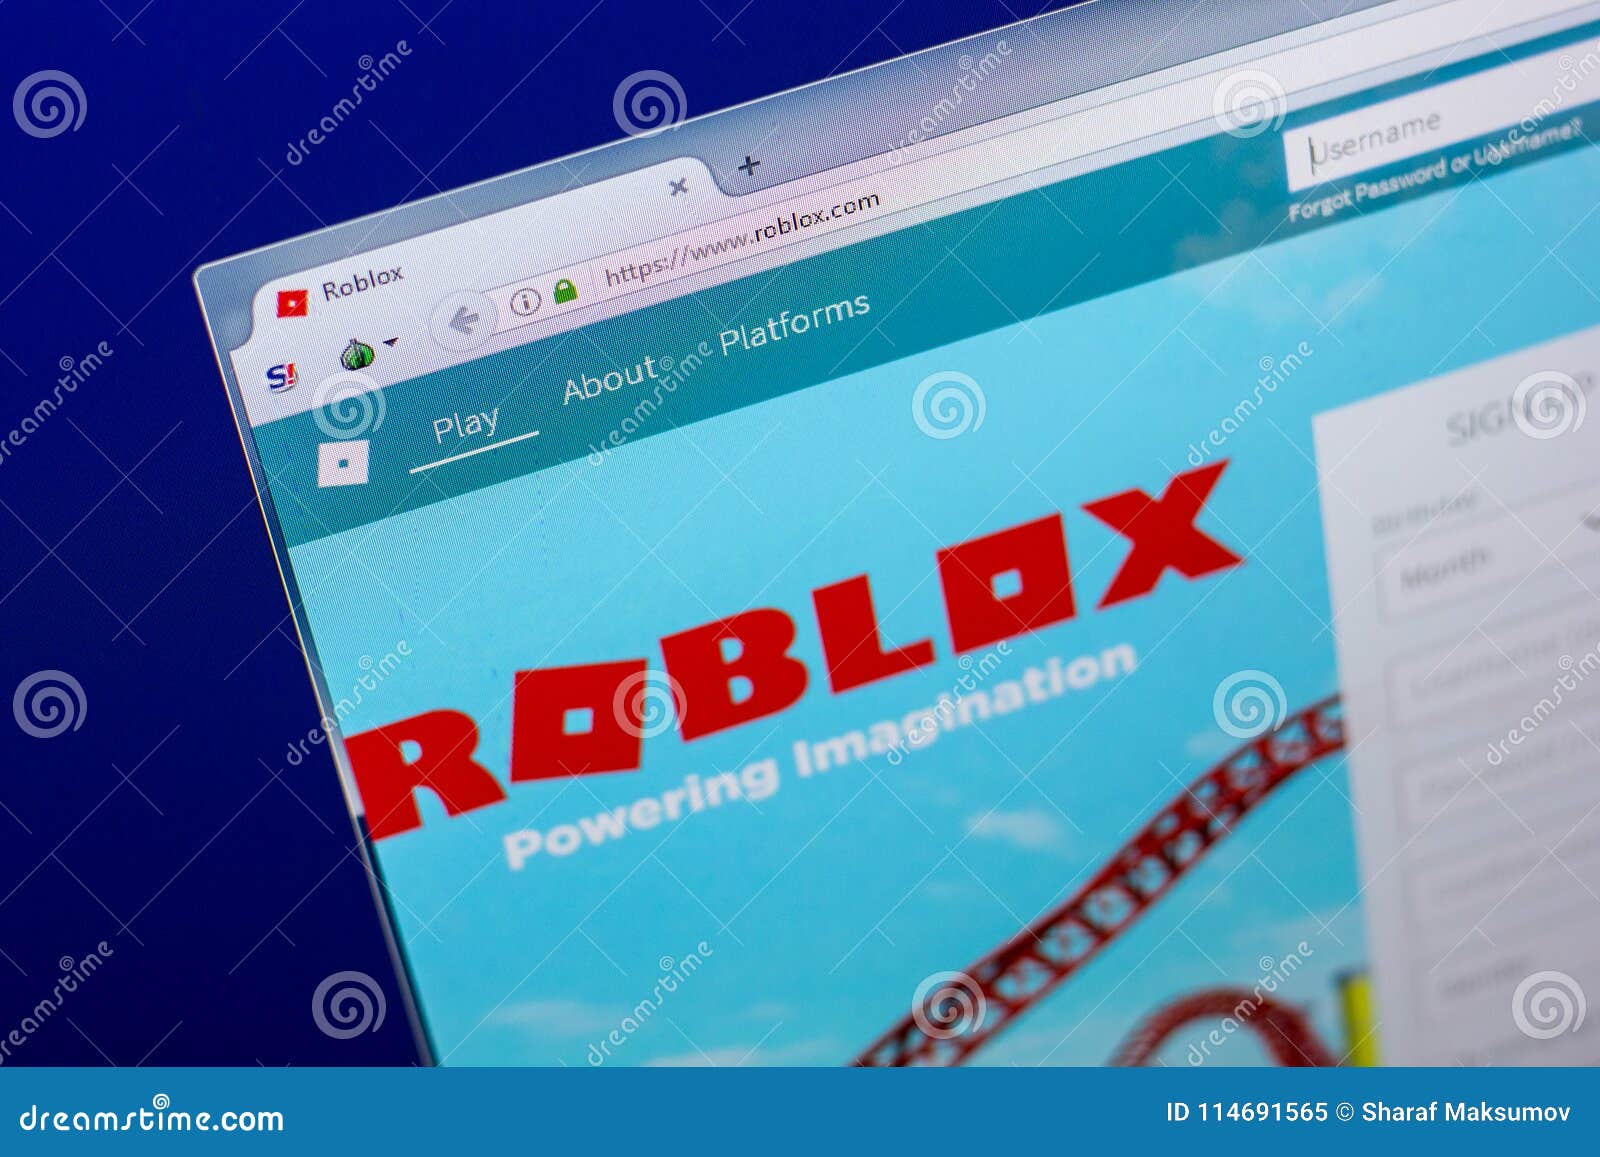 Roblox Com Homepage